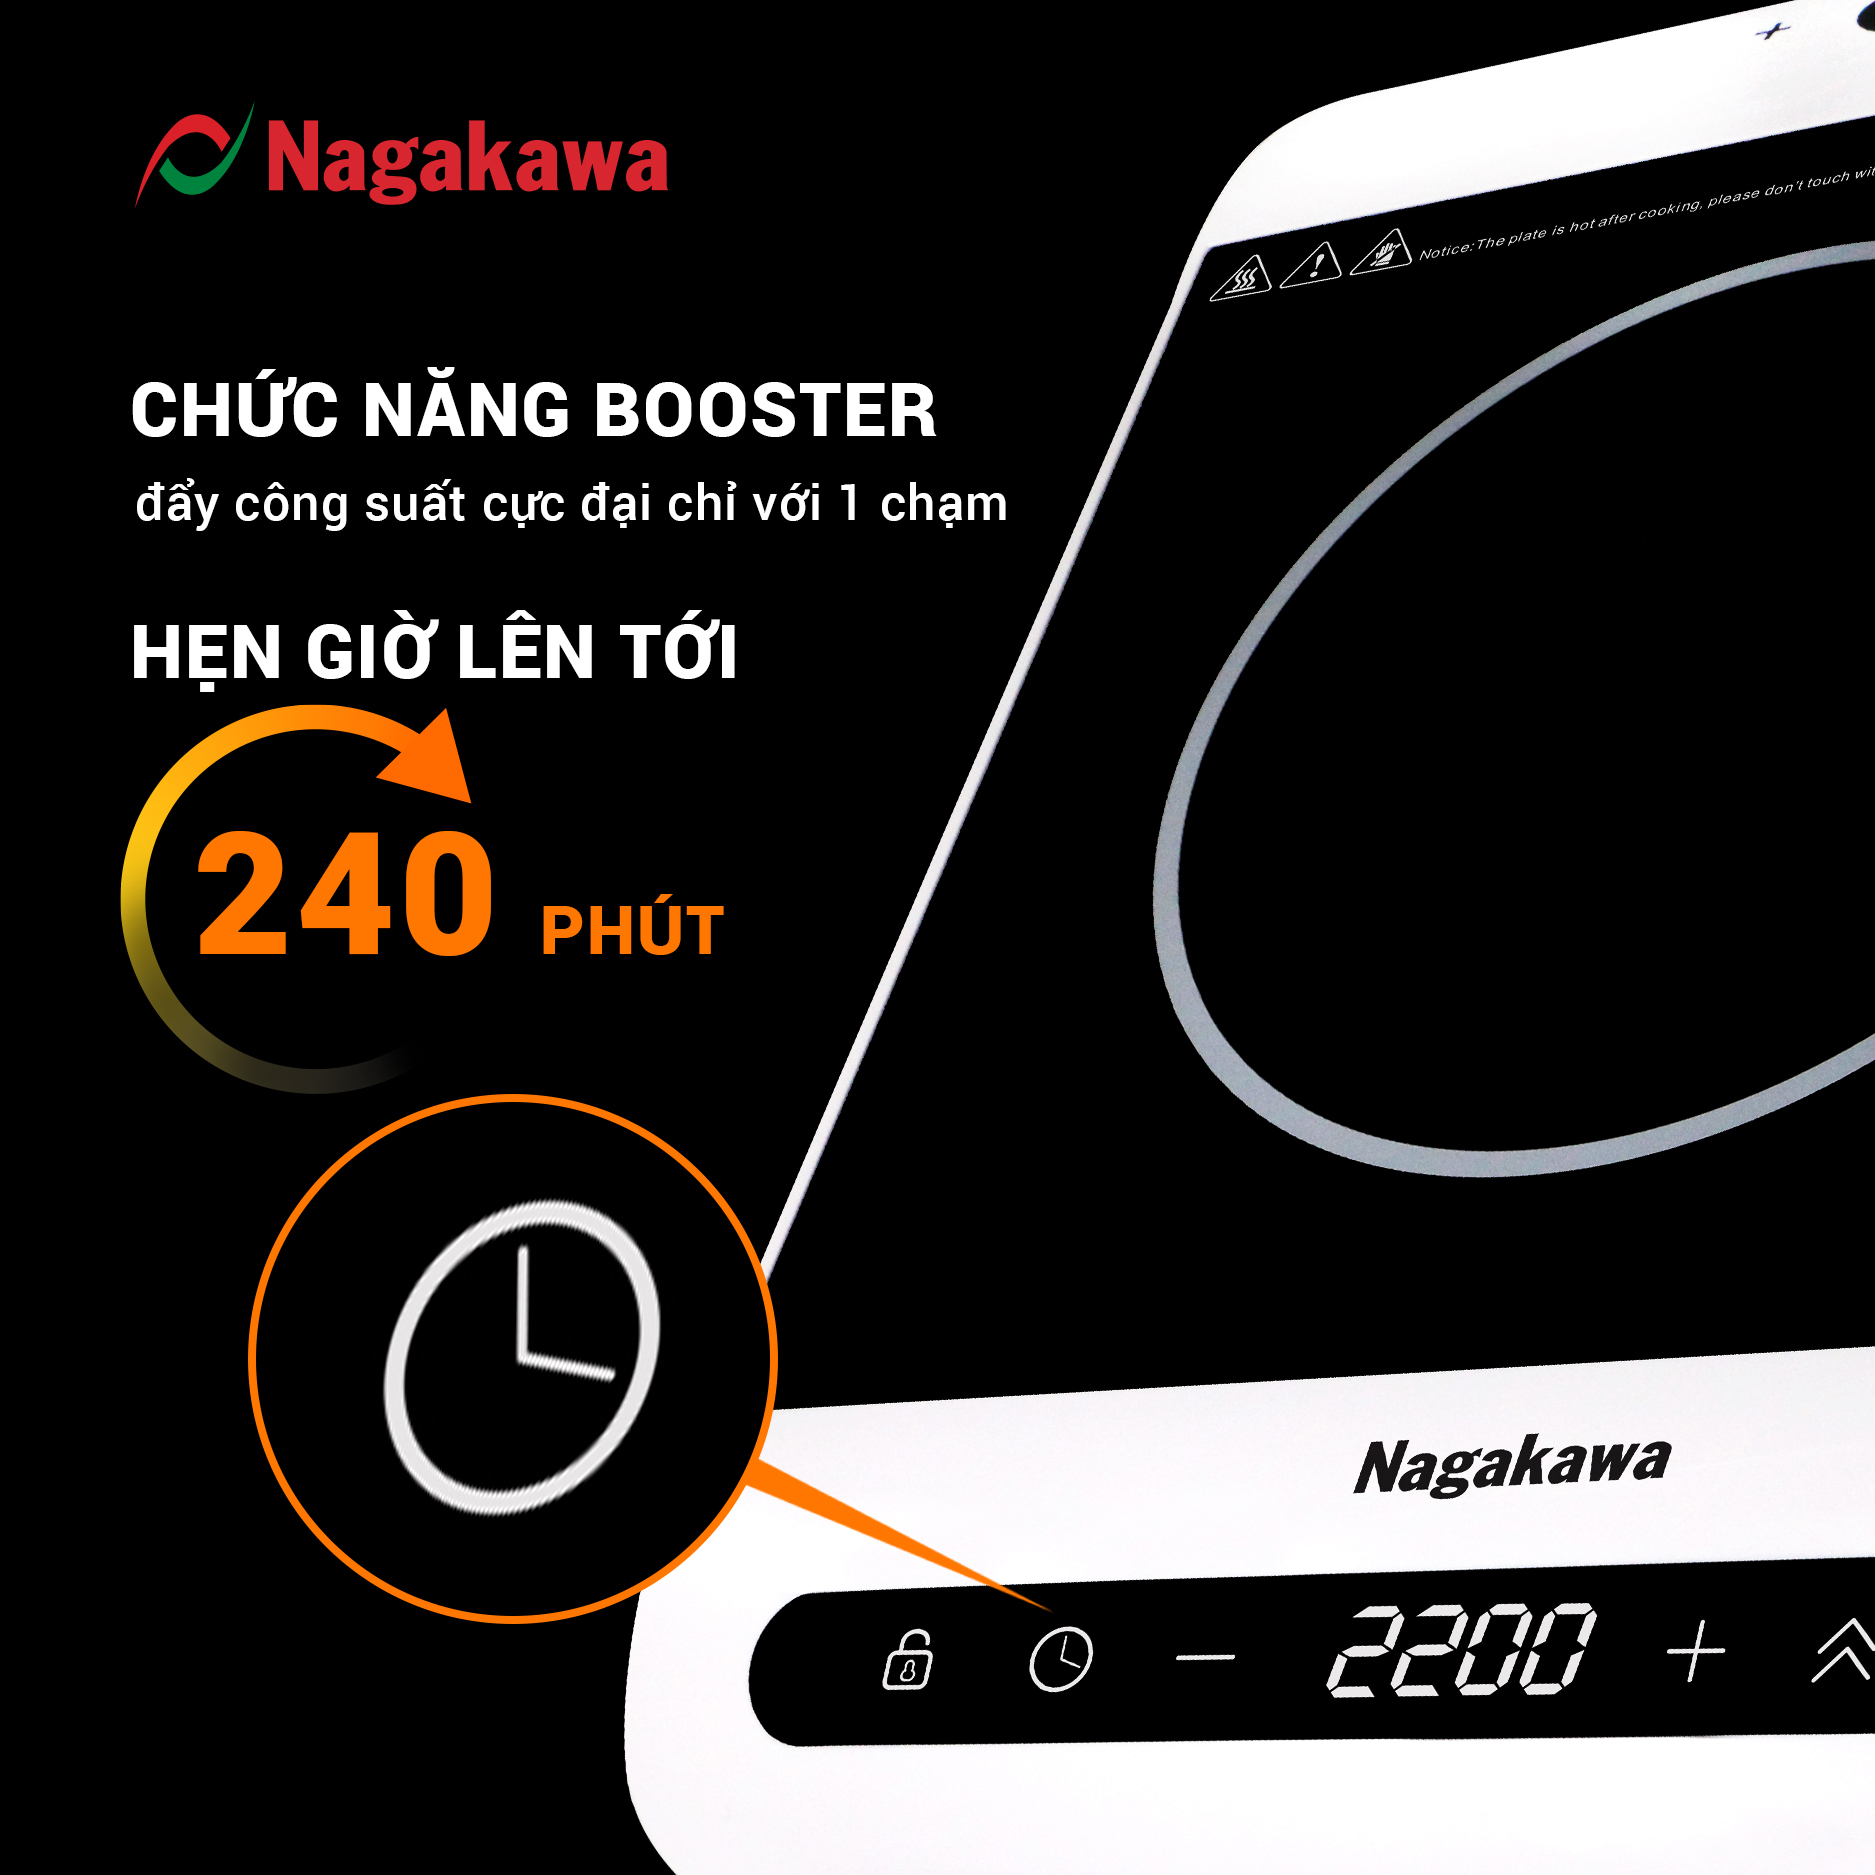 Bếp Từ Điều Khiển Cảm Ứng 2 Hướng Nagakawa NAG0712 (2200W) - Chức Năng Booster Nấu Nhanh - Hàng Chính Hãng